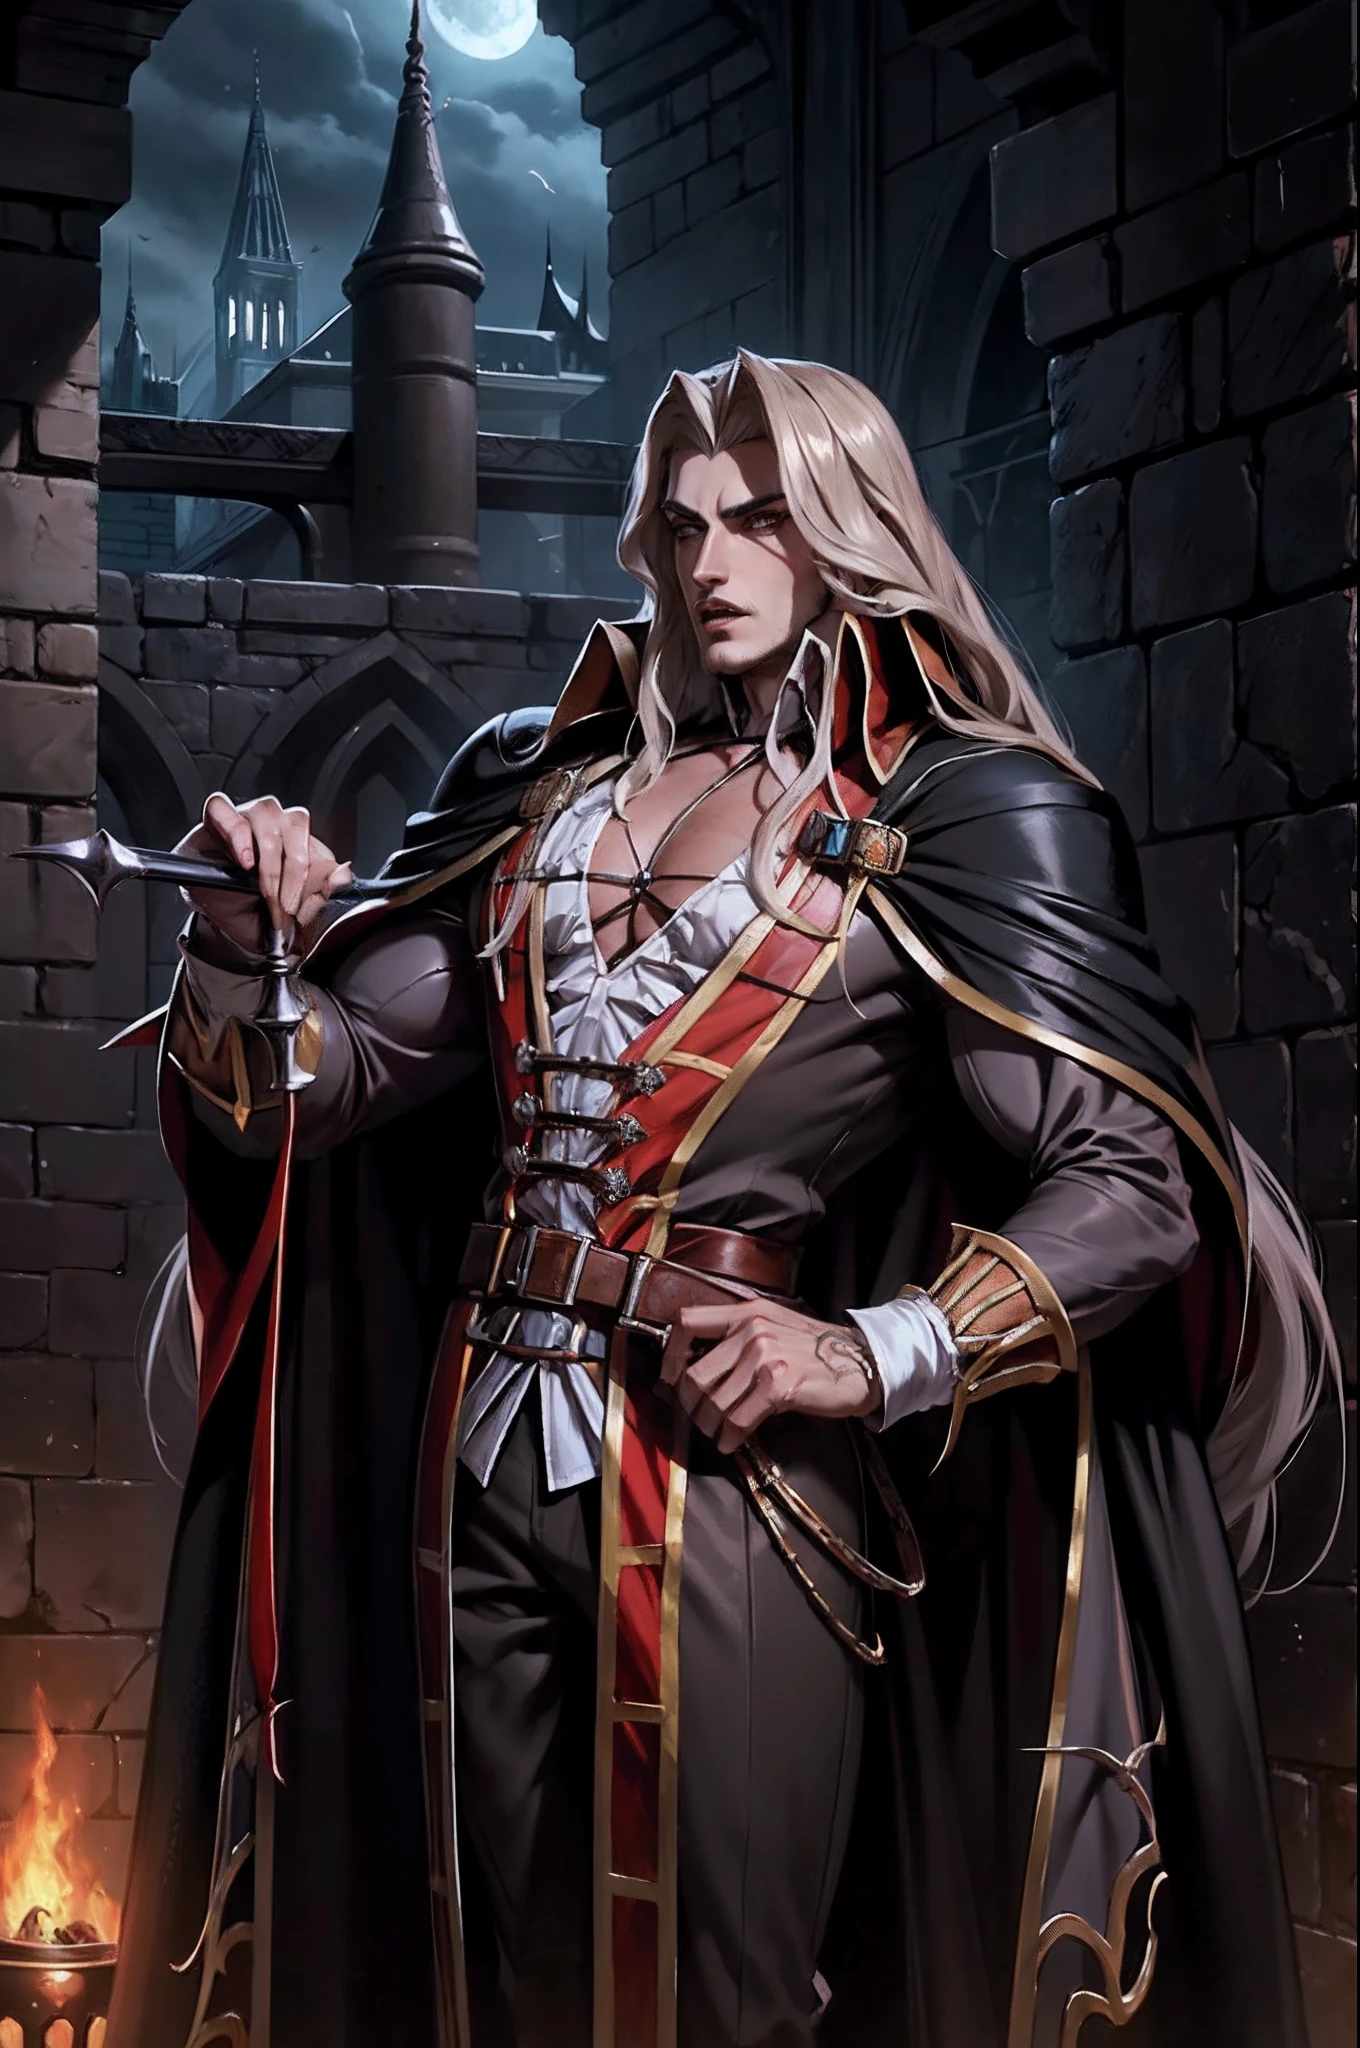 Castlevania Shadow Lord hyperrealistisch superdetailliert Lord Dracula gutaussehend muskulös komplett marokkanisch anderer Blickwinkel auf denselben Charakter hyperrealistisch superdetailliert